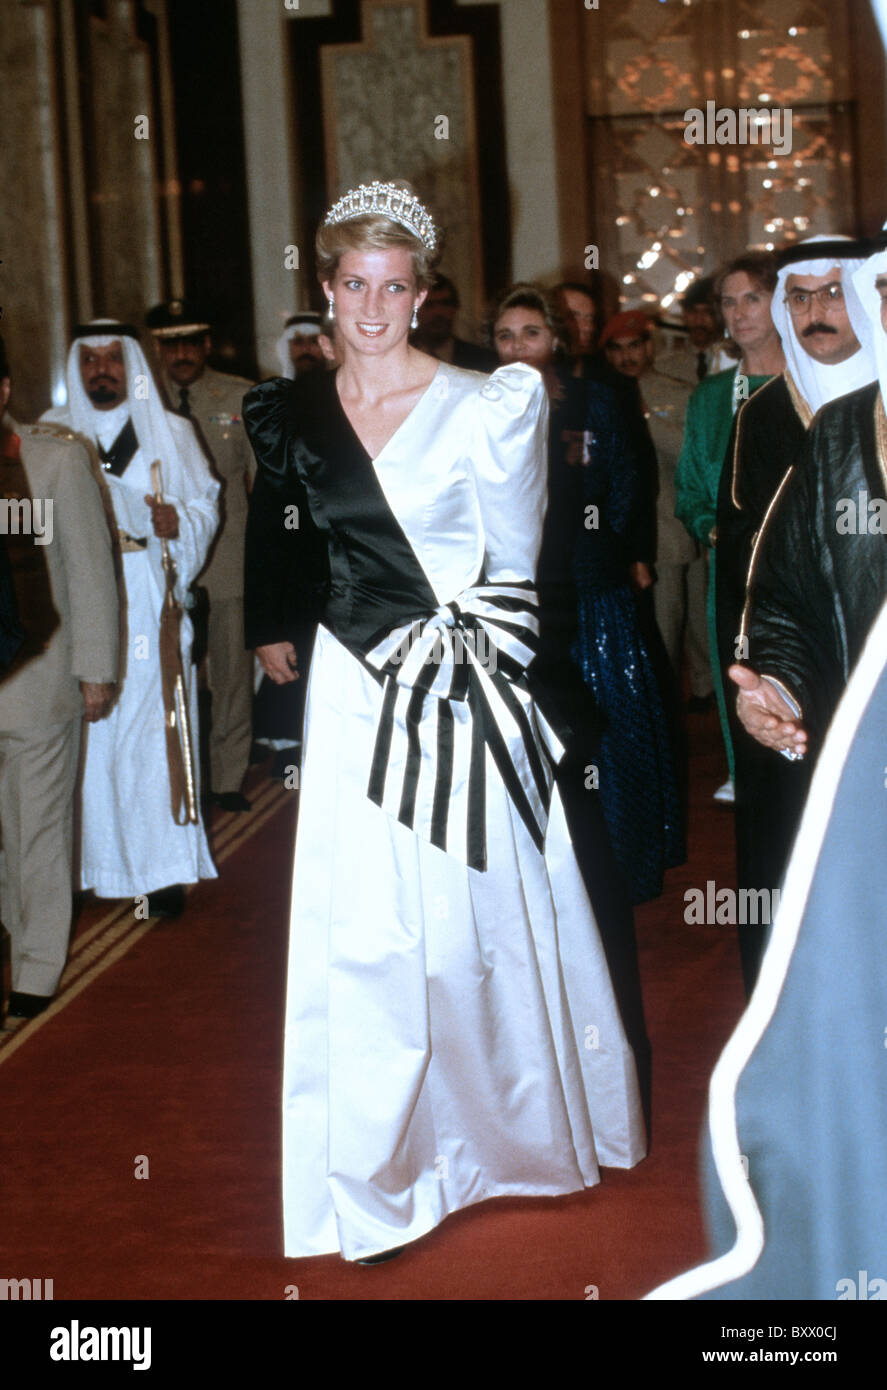 Prinzessin Diana in Riad während ihrer Royal Tour von Saudi-Arabien. Stockfoto